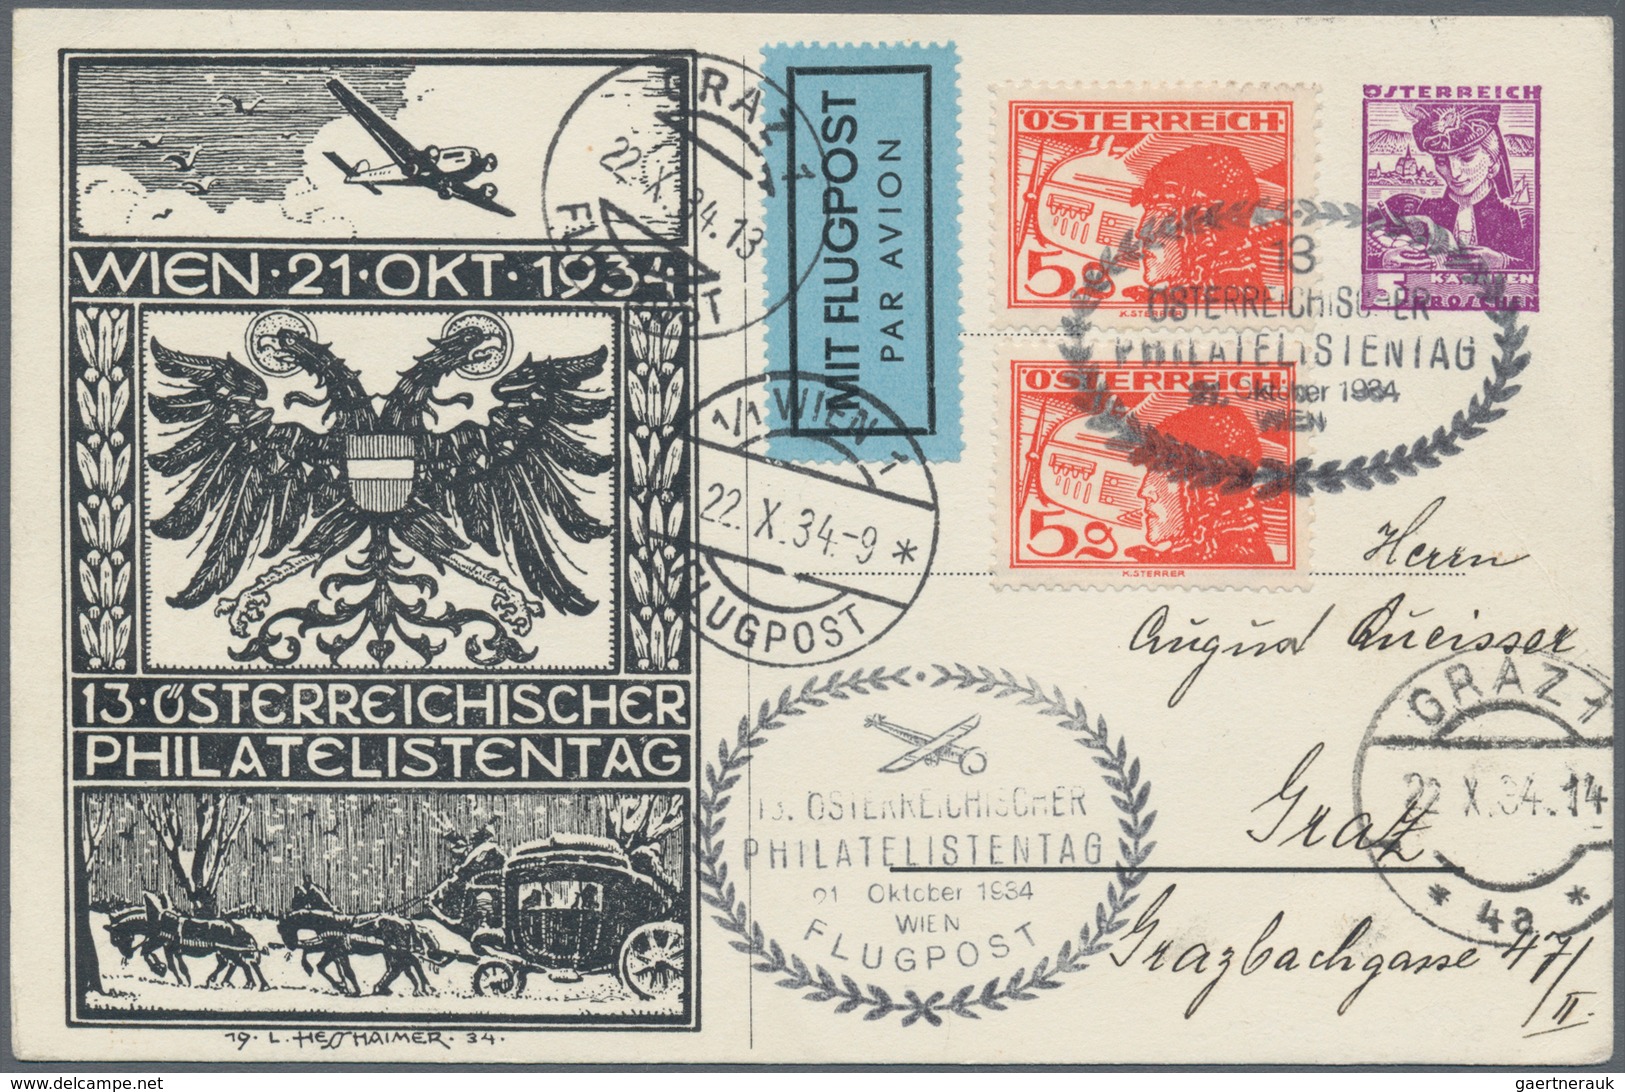 Österreich - Privatganzsachen: 1922/1938, gehaltvolle und attraktive Sammlung mit über 500 Privatgan